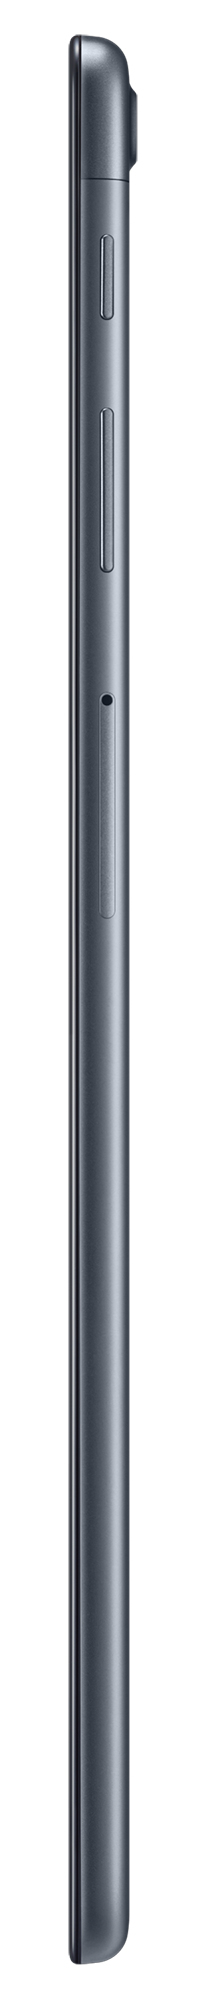 Samsung Galaxy Tab A 10.1-inch 32GB Wi-Fi Tablet - Black